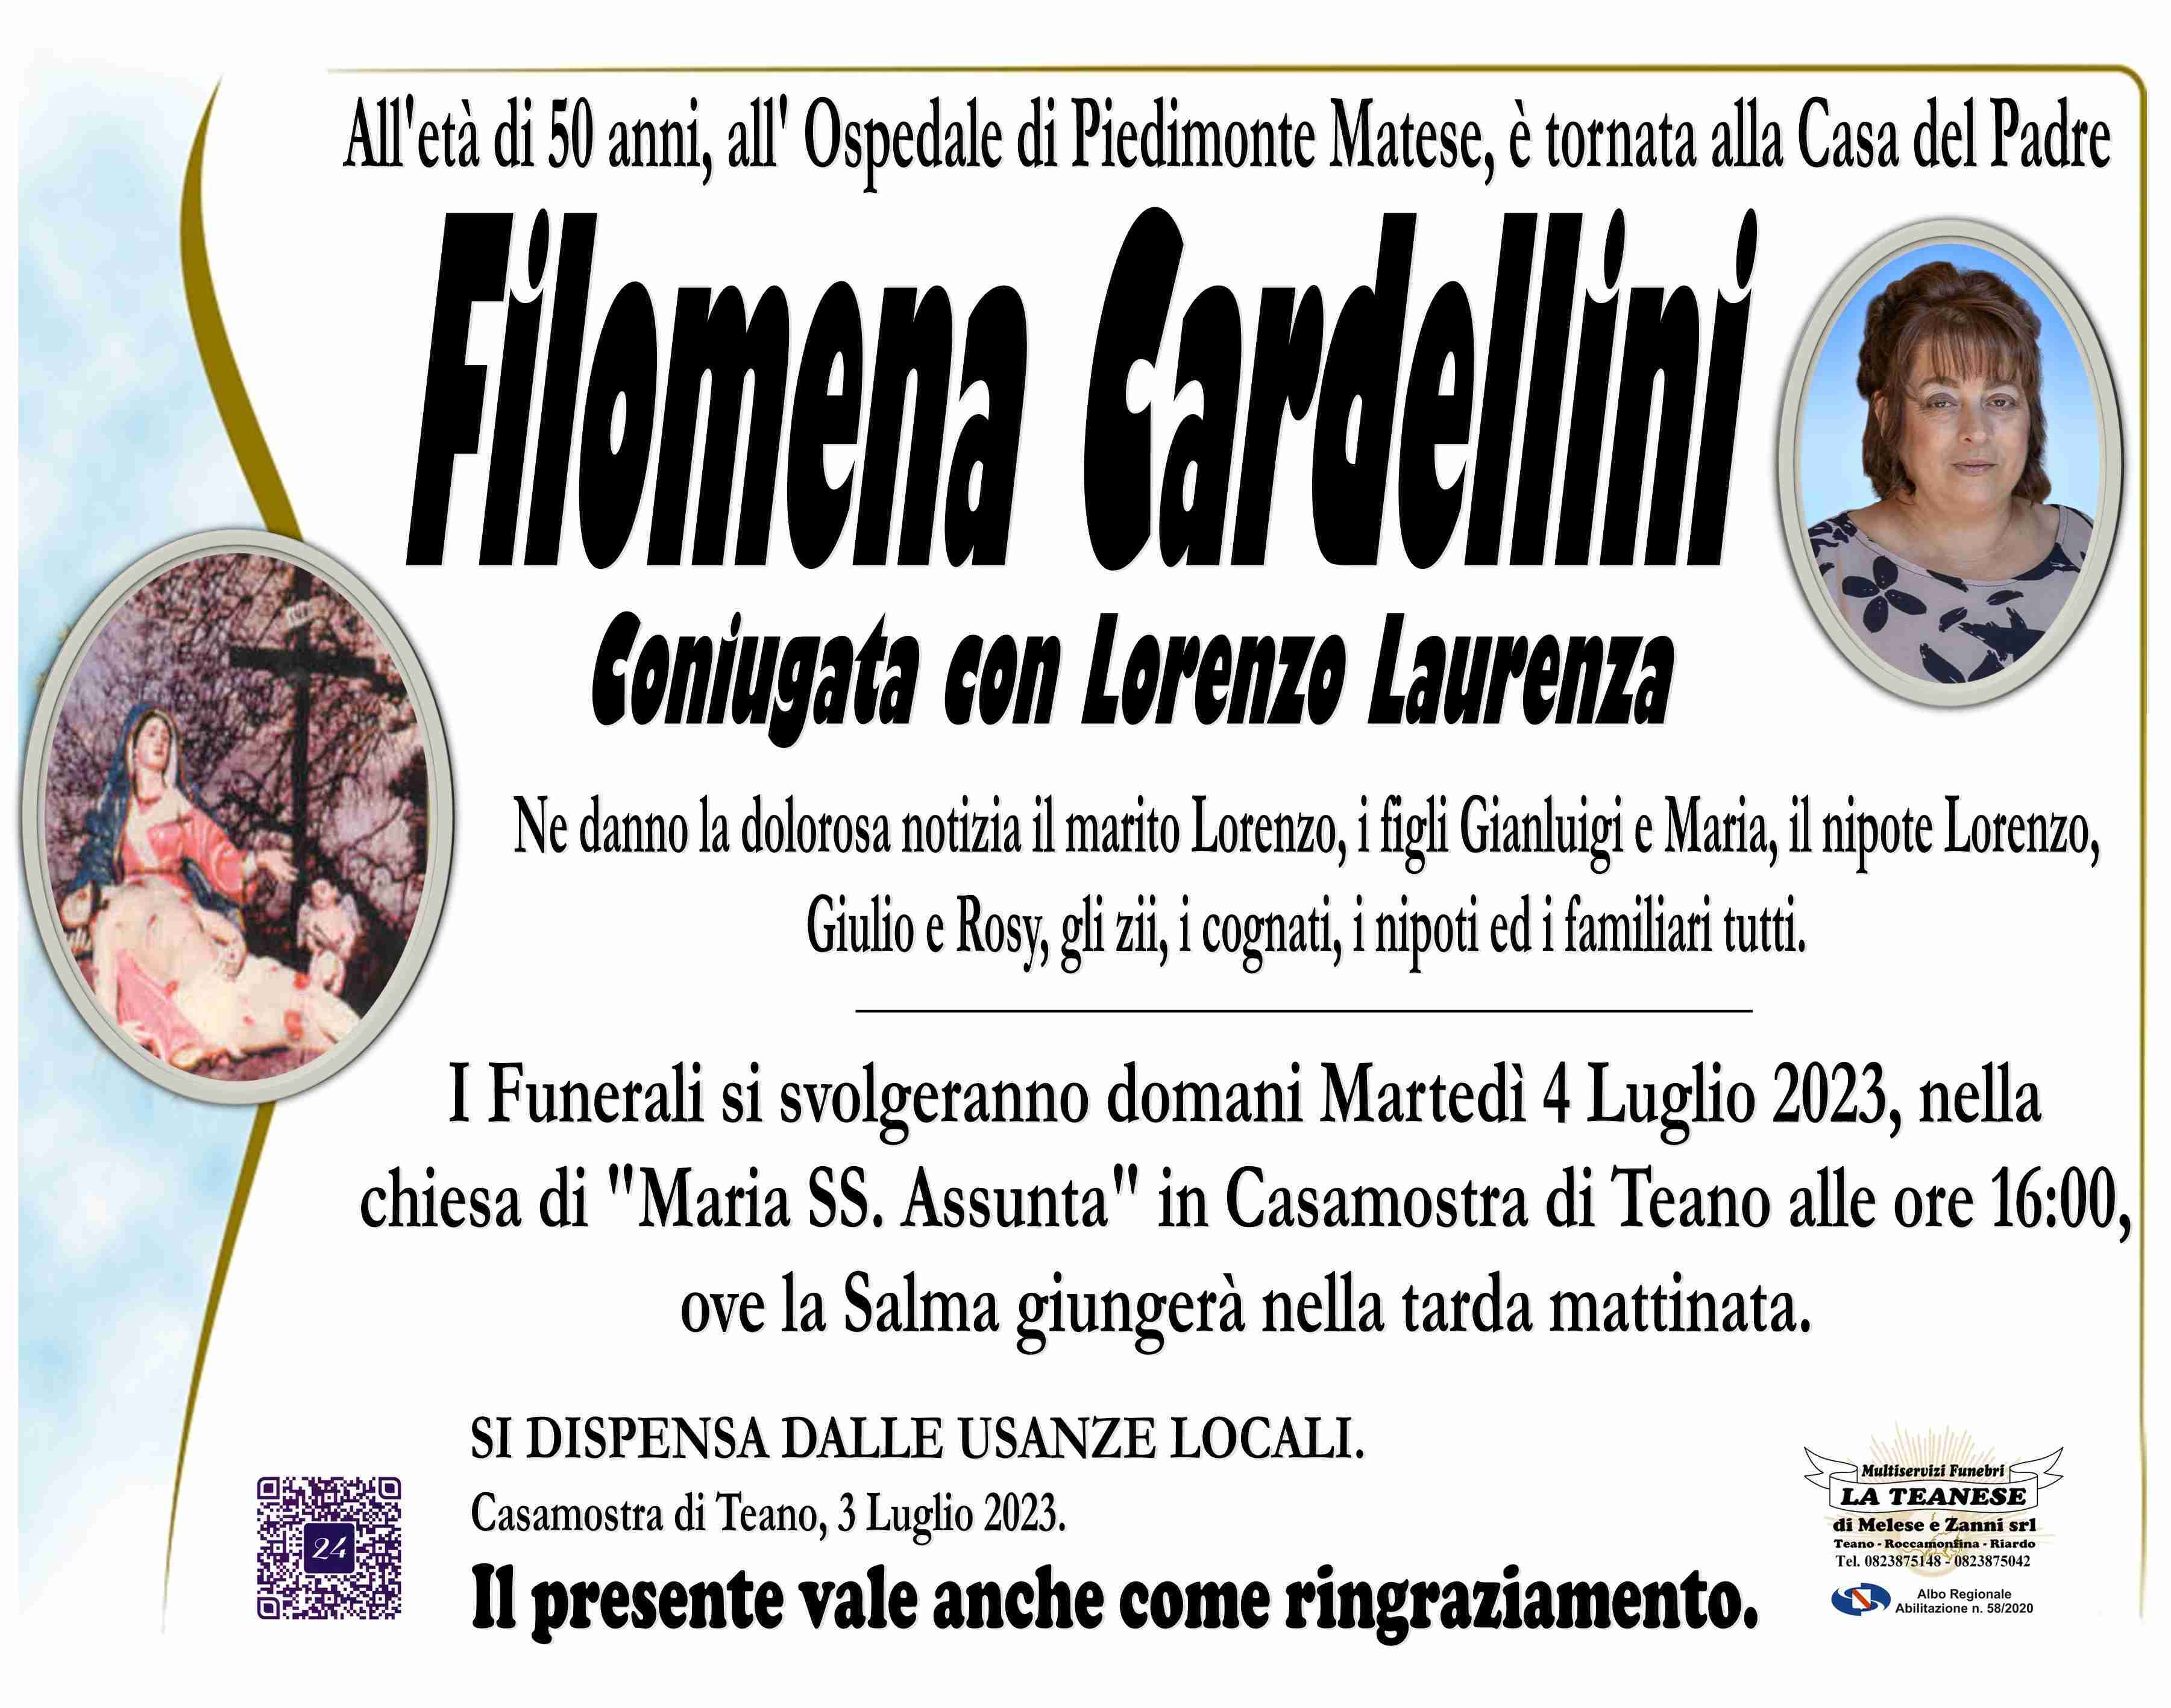 Filomena Cardellini